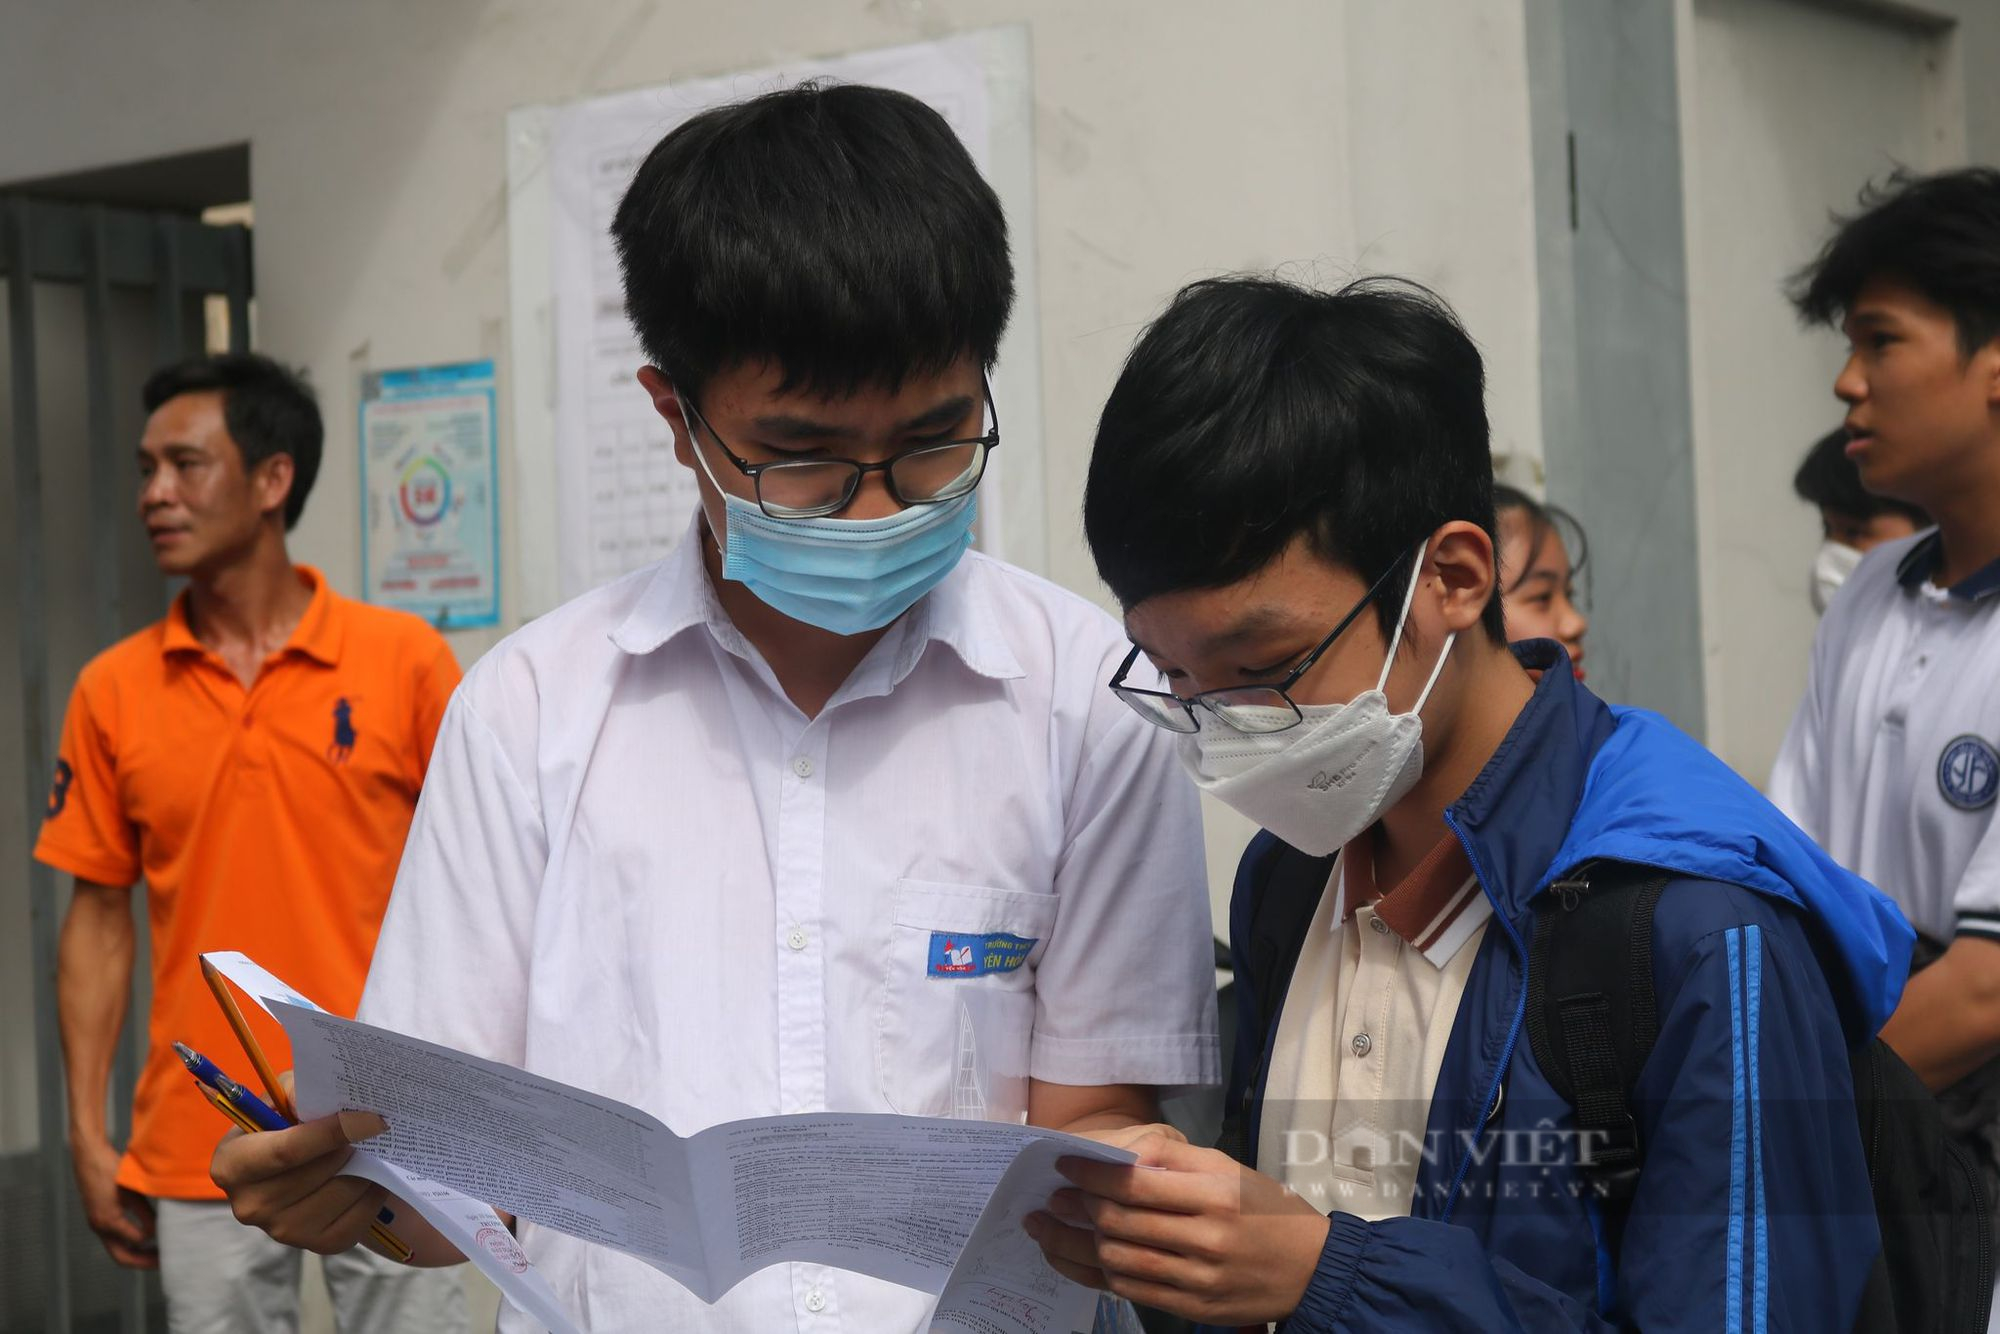 Thi vào lớp 10 ở Hà Nội 2022: Các trường có điểm chuẩn dưới 40 trong 2 năm gần đây - Ảnh 1.